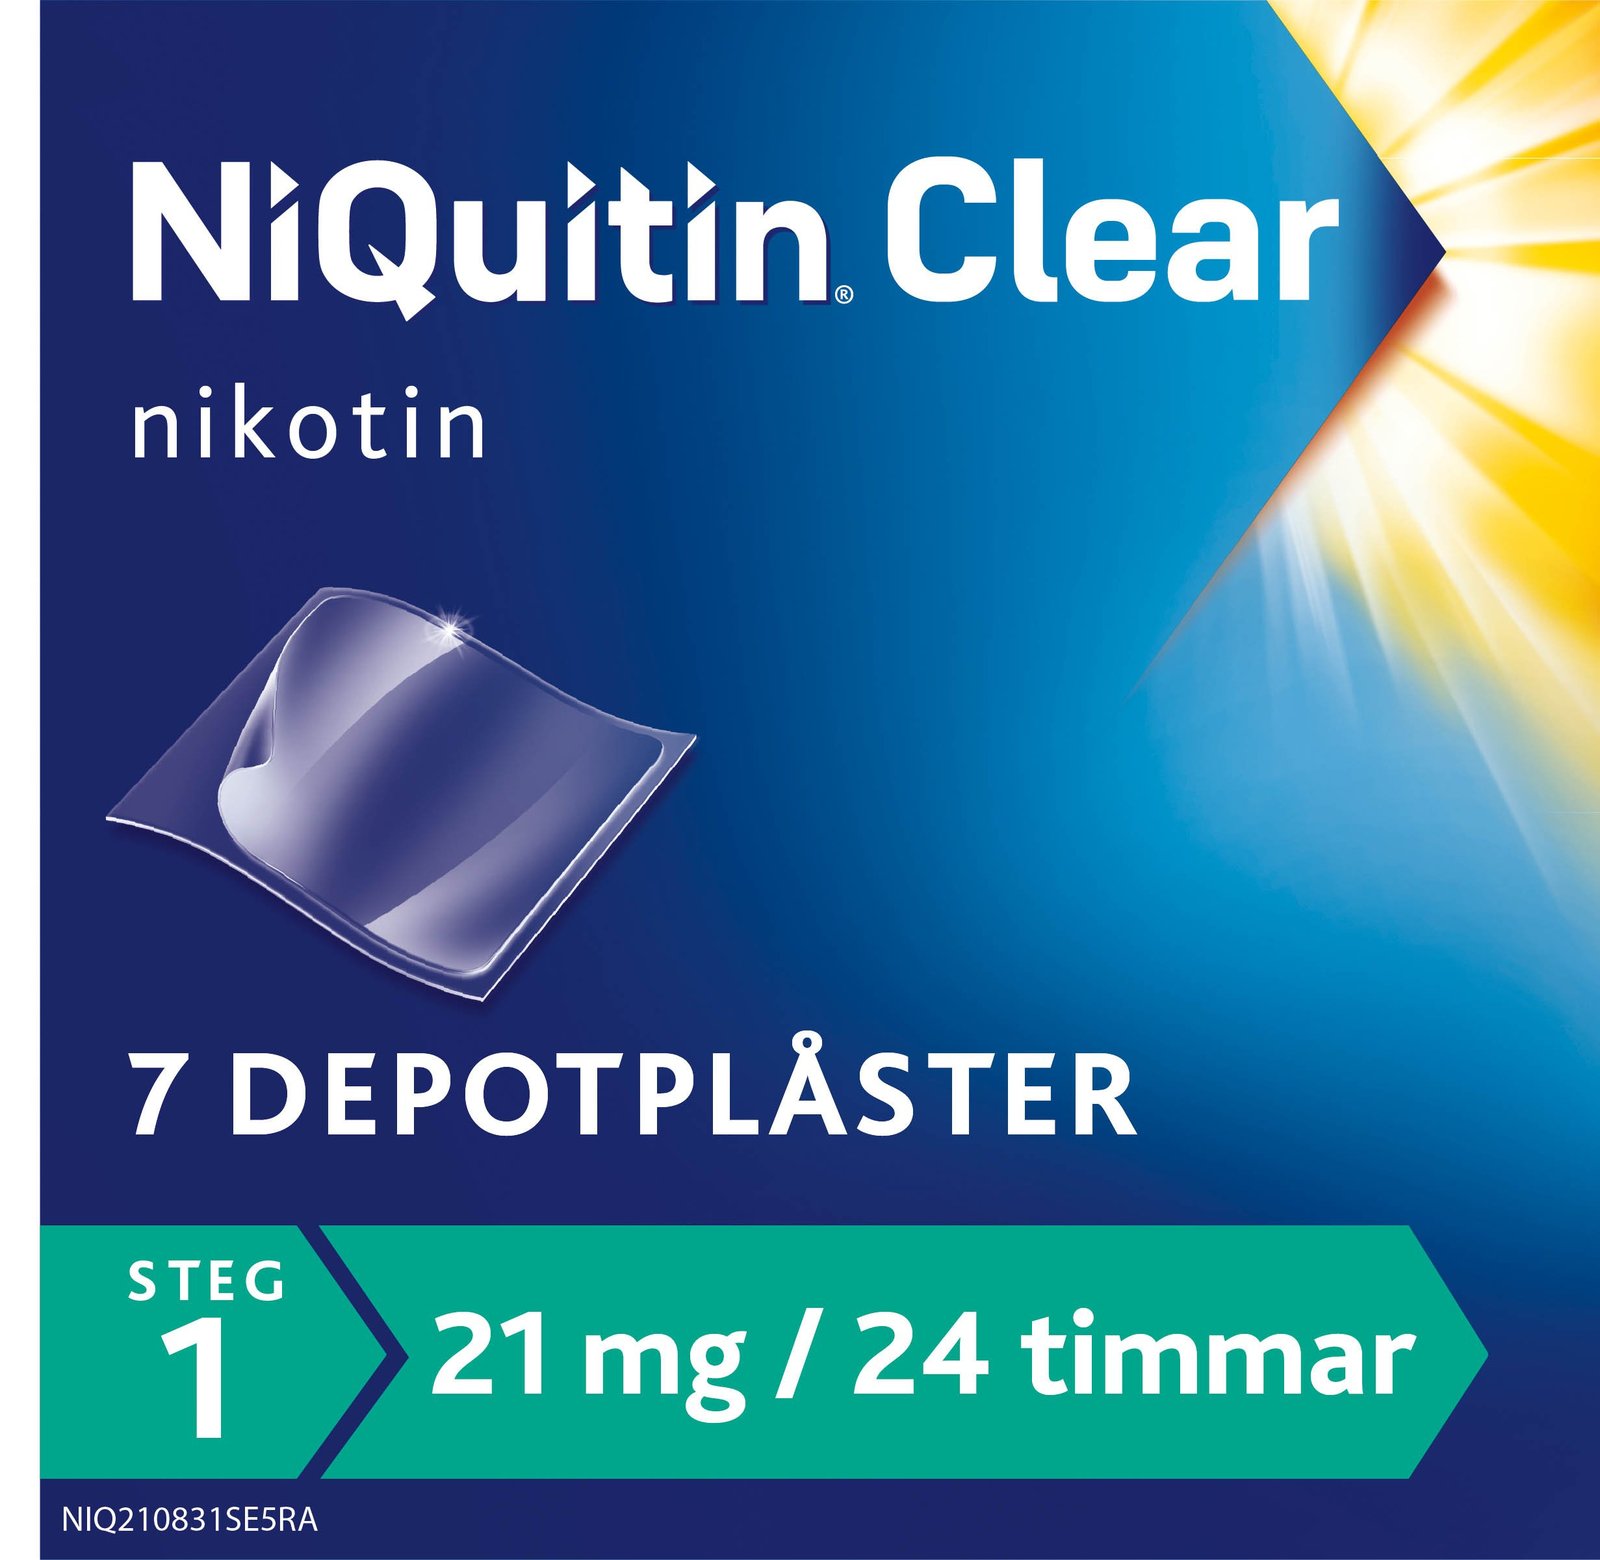 Niquitin Clear 21 mg / 24 timmar Depotplåster Nikotinplåster 7 st